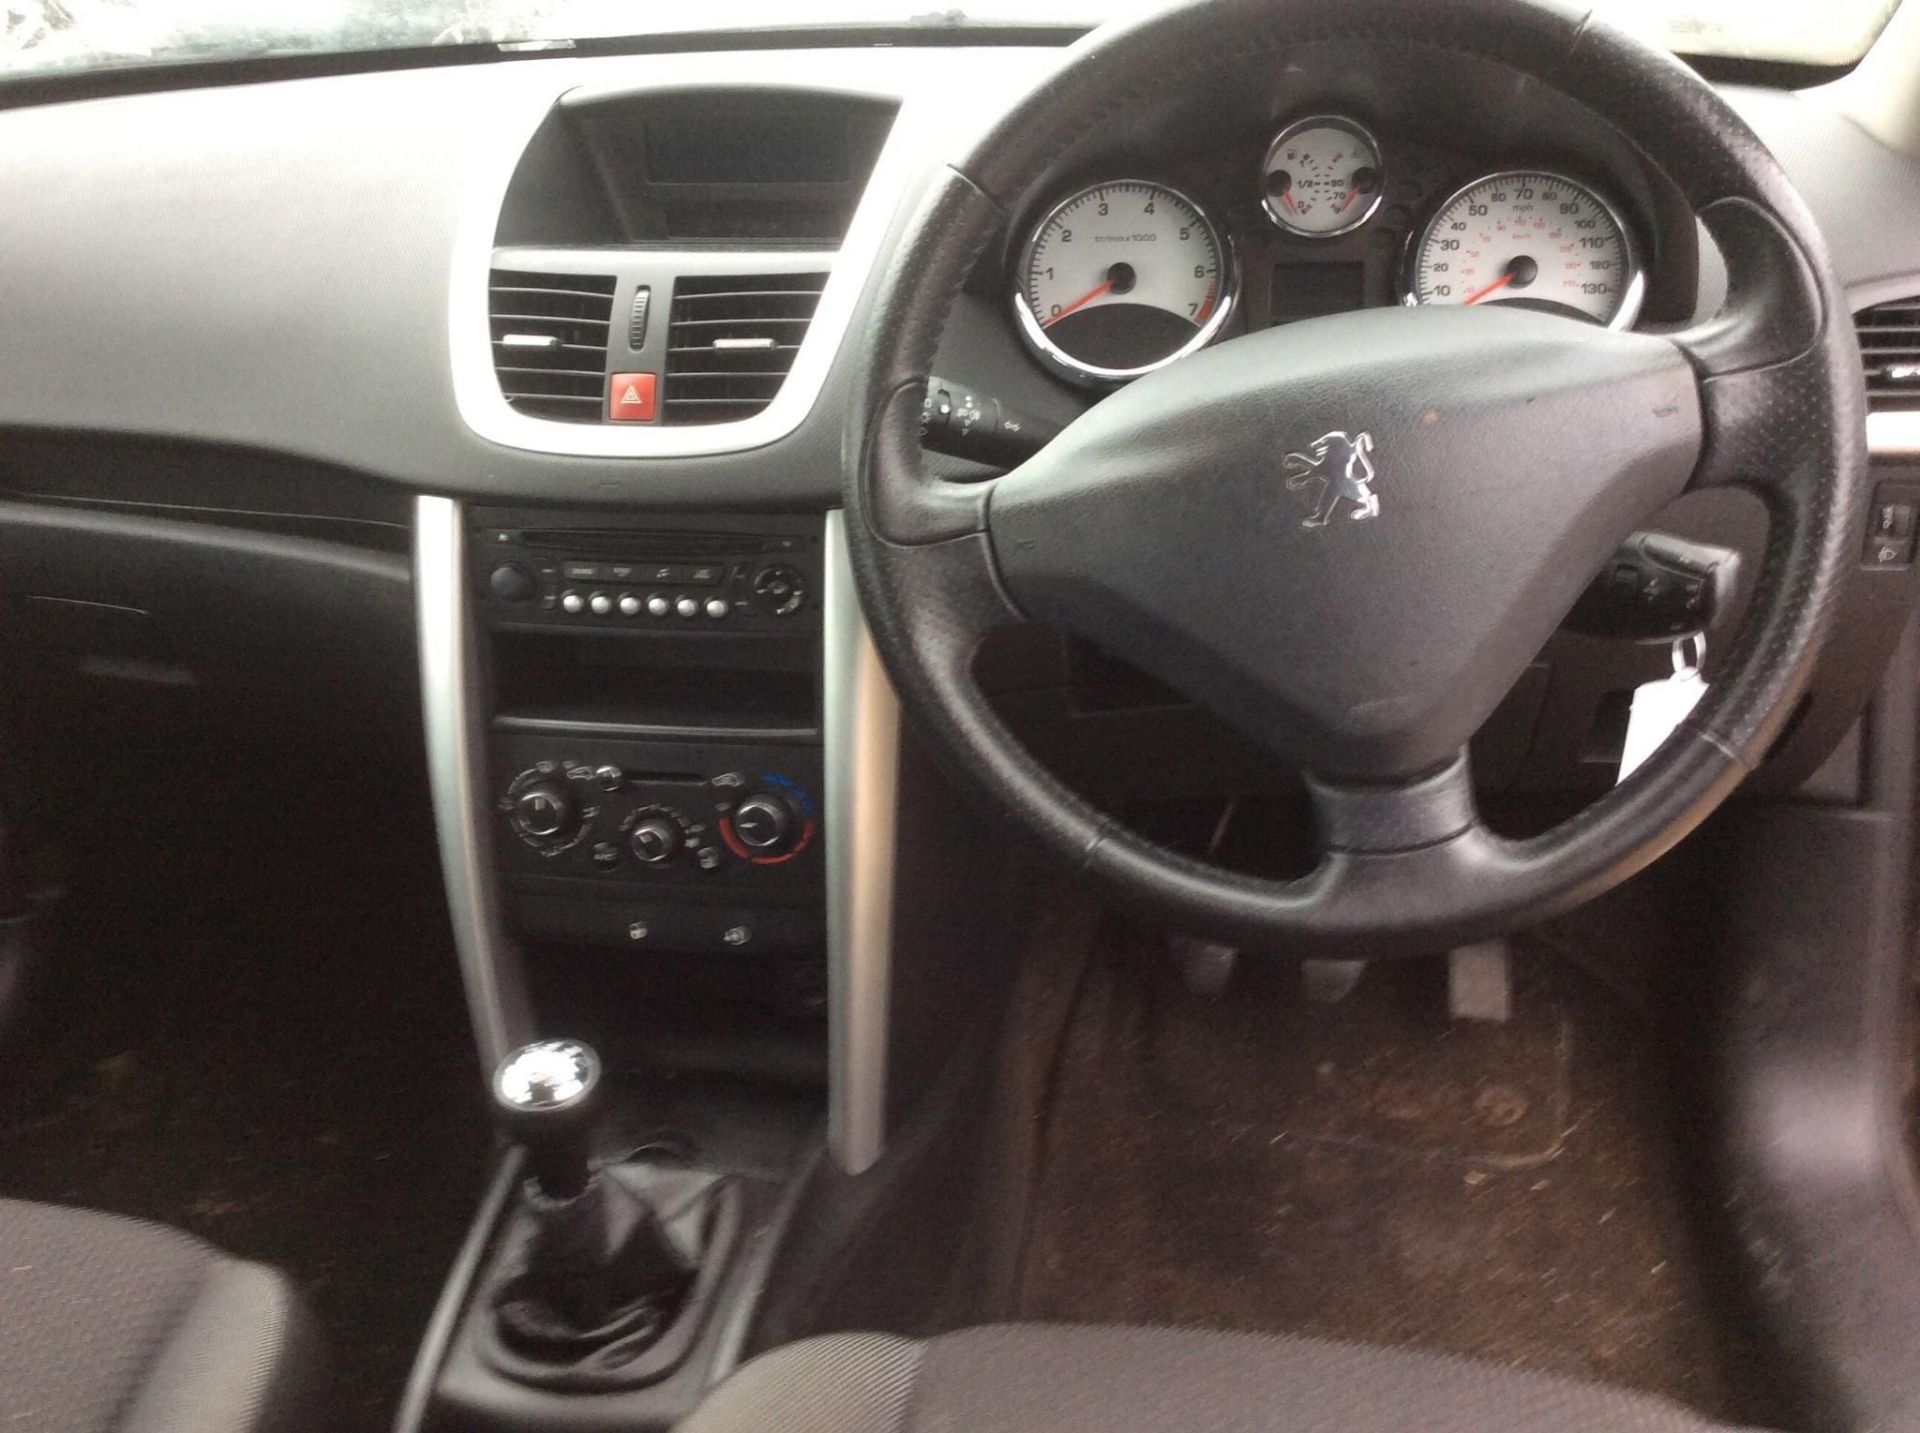 2012 Peugeot 207 1.4 Active 5 Door Hatchback - Image 7 of 16